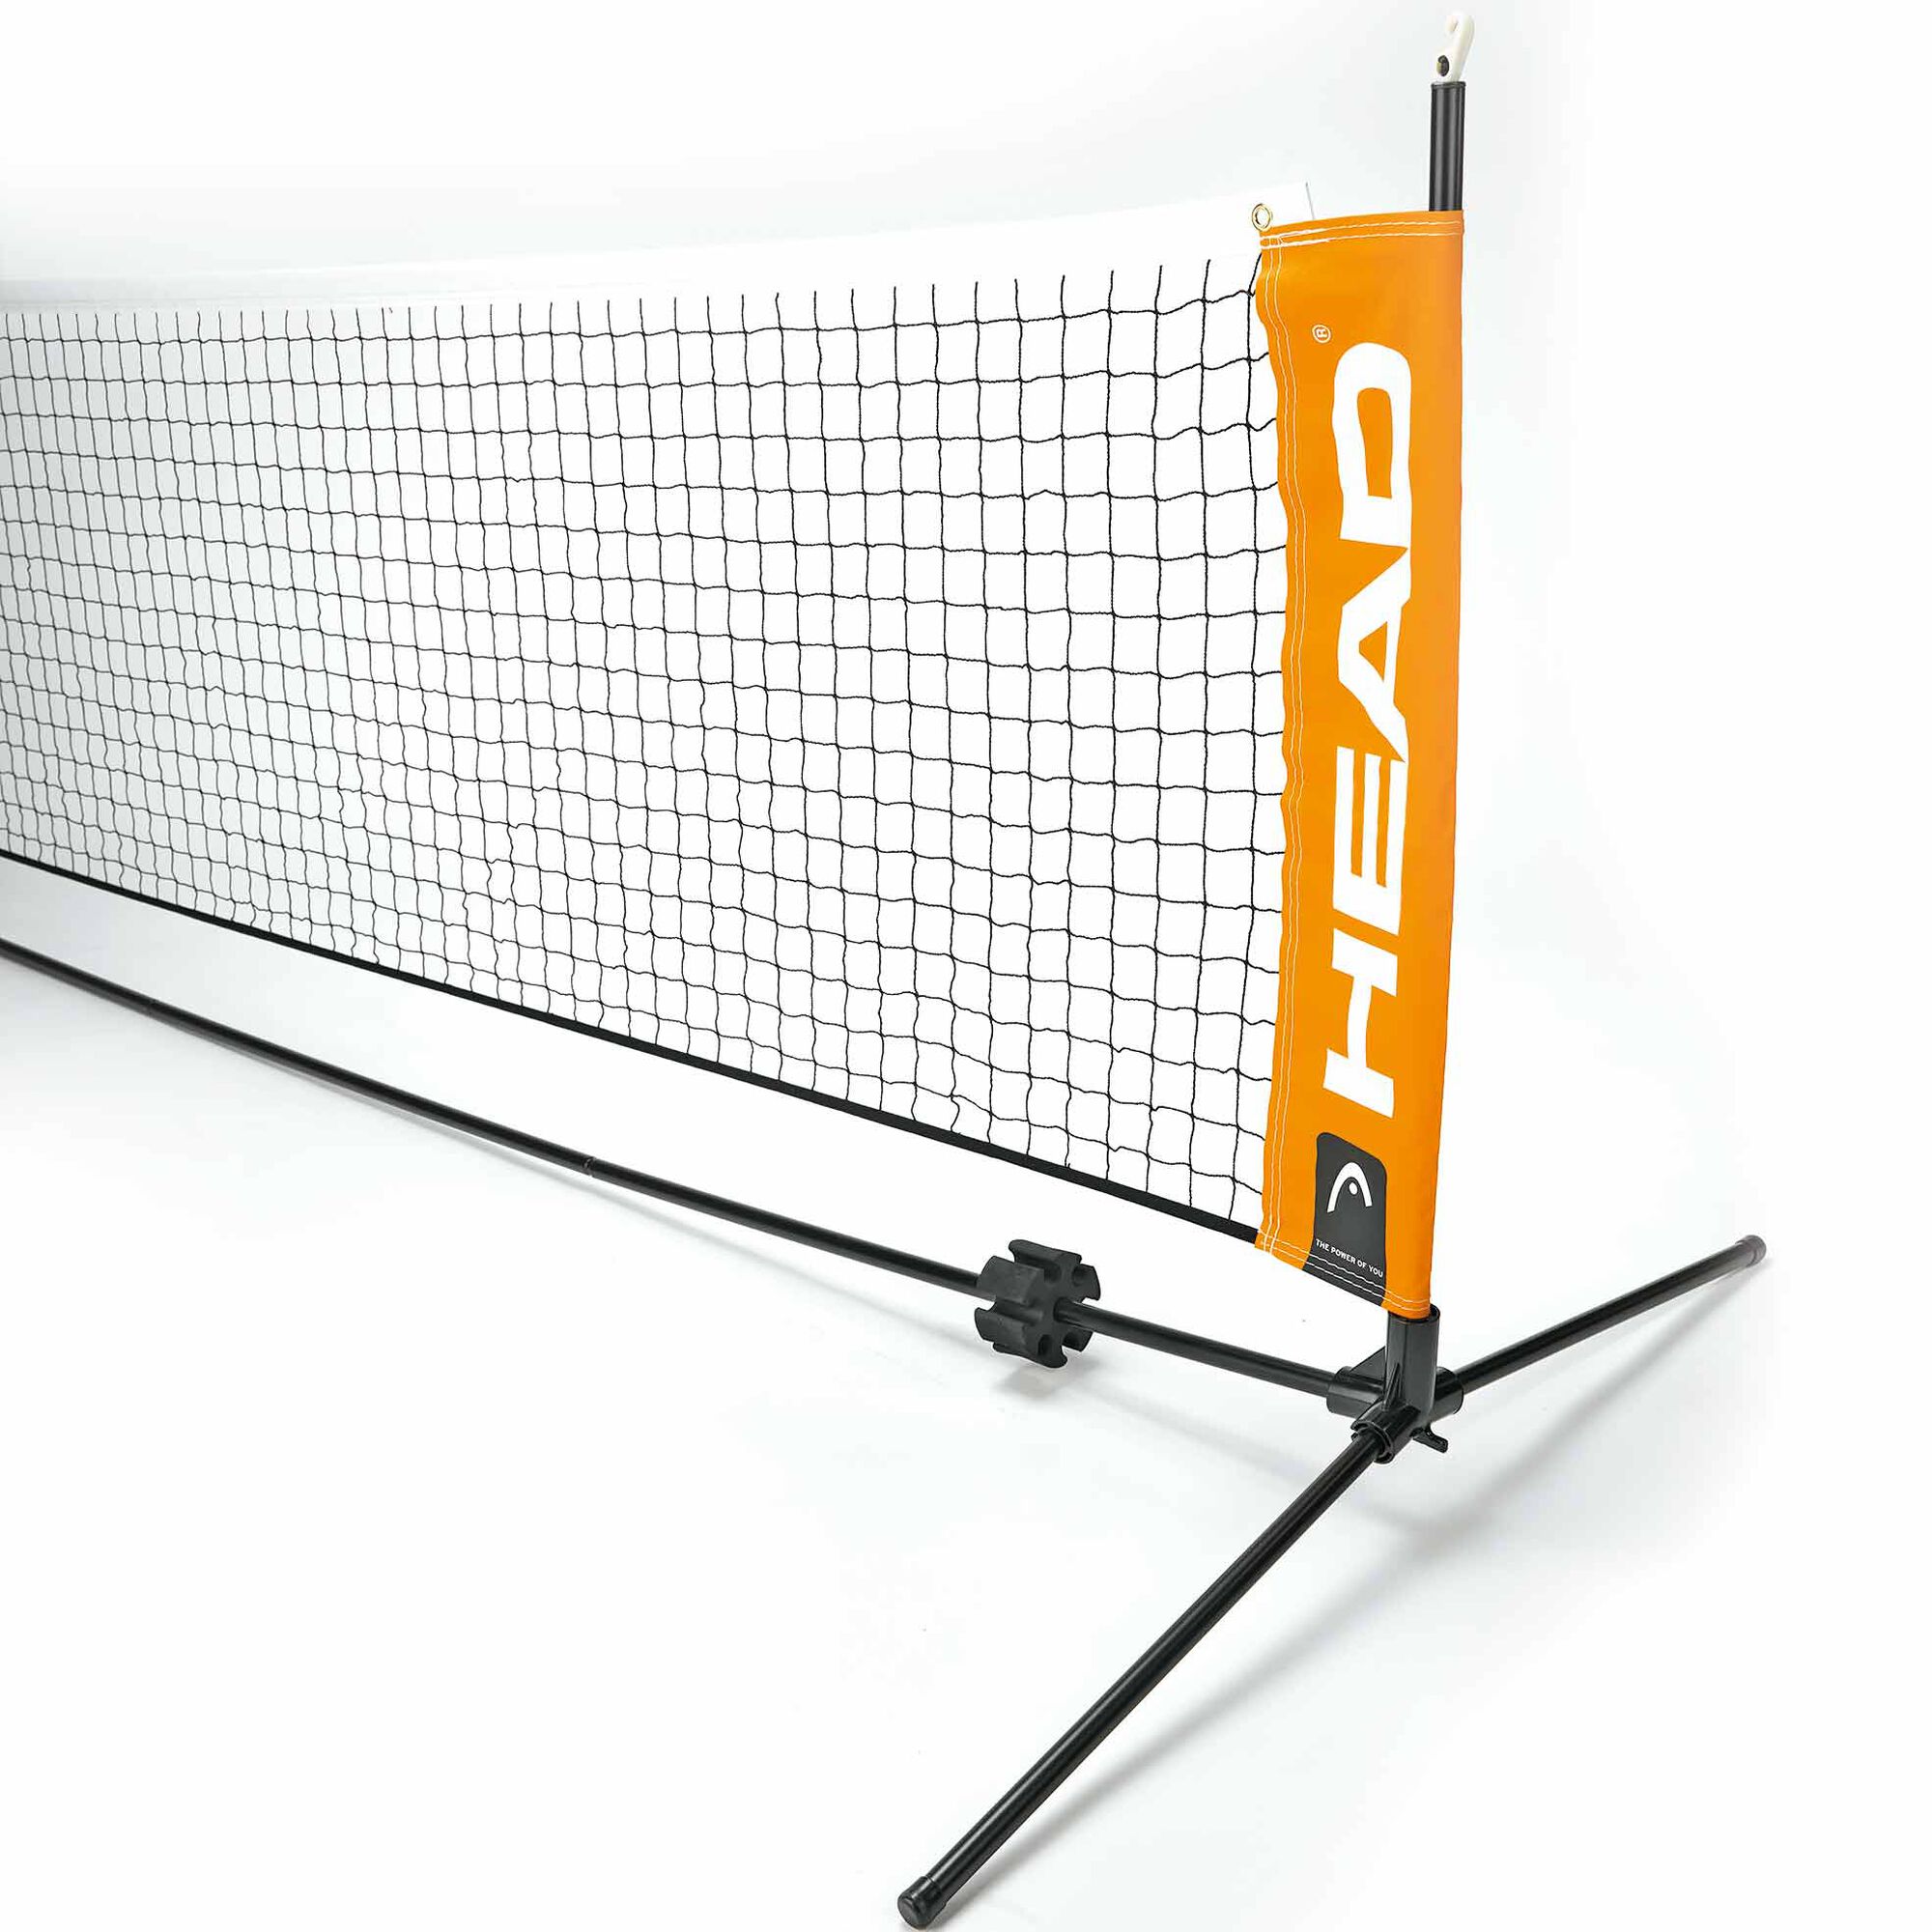 Купить сетку для тенниса. Mini Tennis net Set 6.1 м. Сетка для детского тенниса Mini Tennis net 6.1m. Сетка Wilson для большого тенниса. Мини-сетка для теннисного корта 6м Toolz.